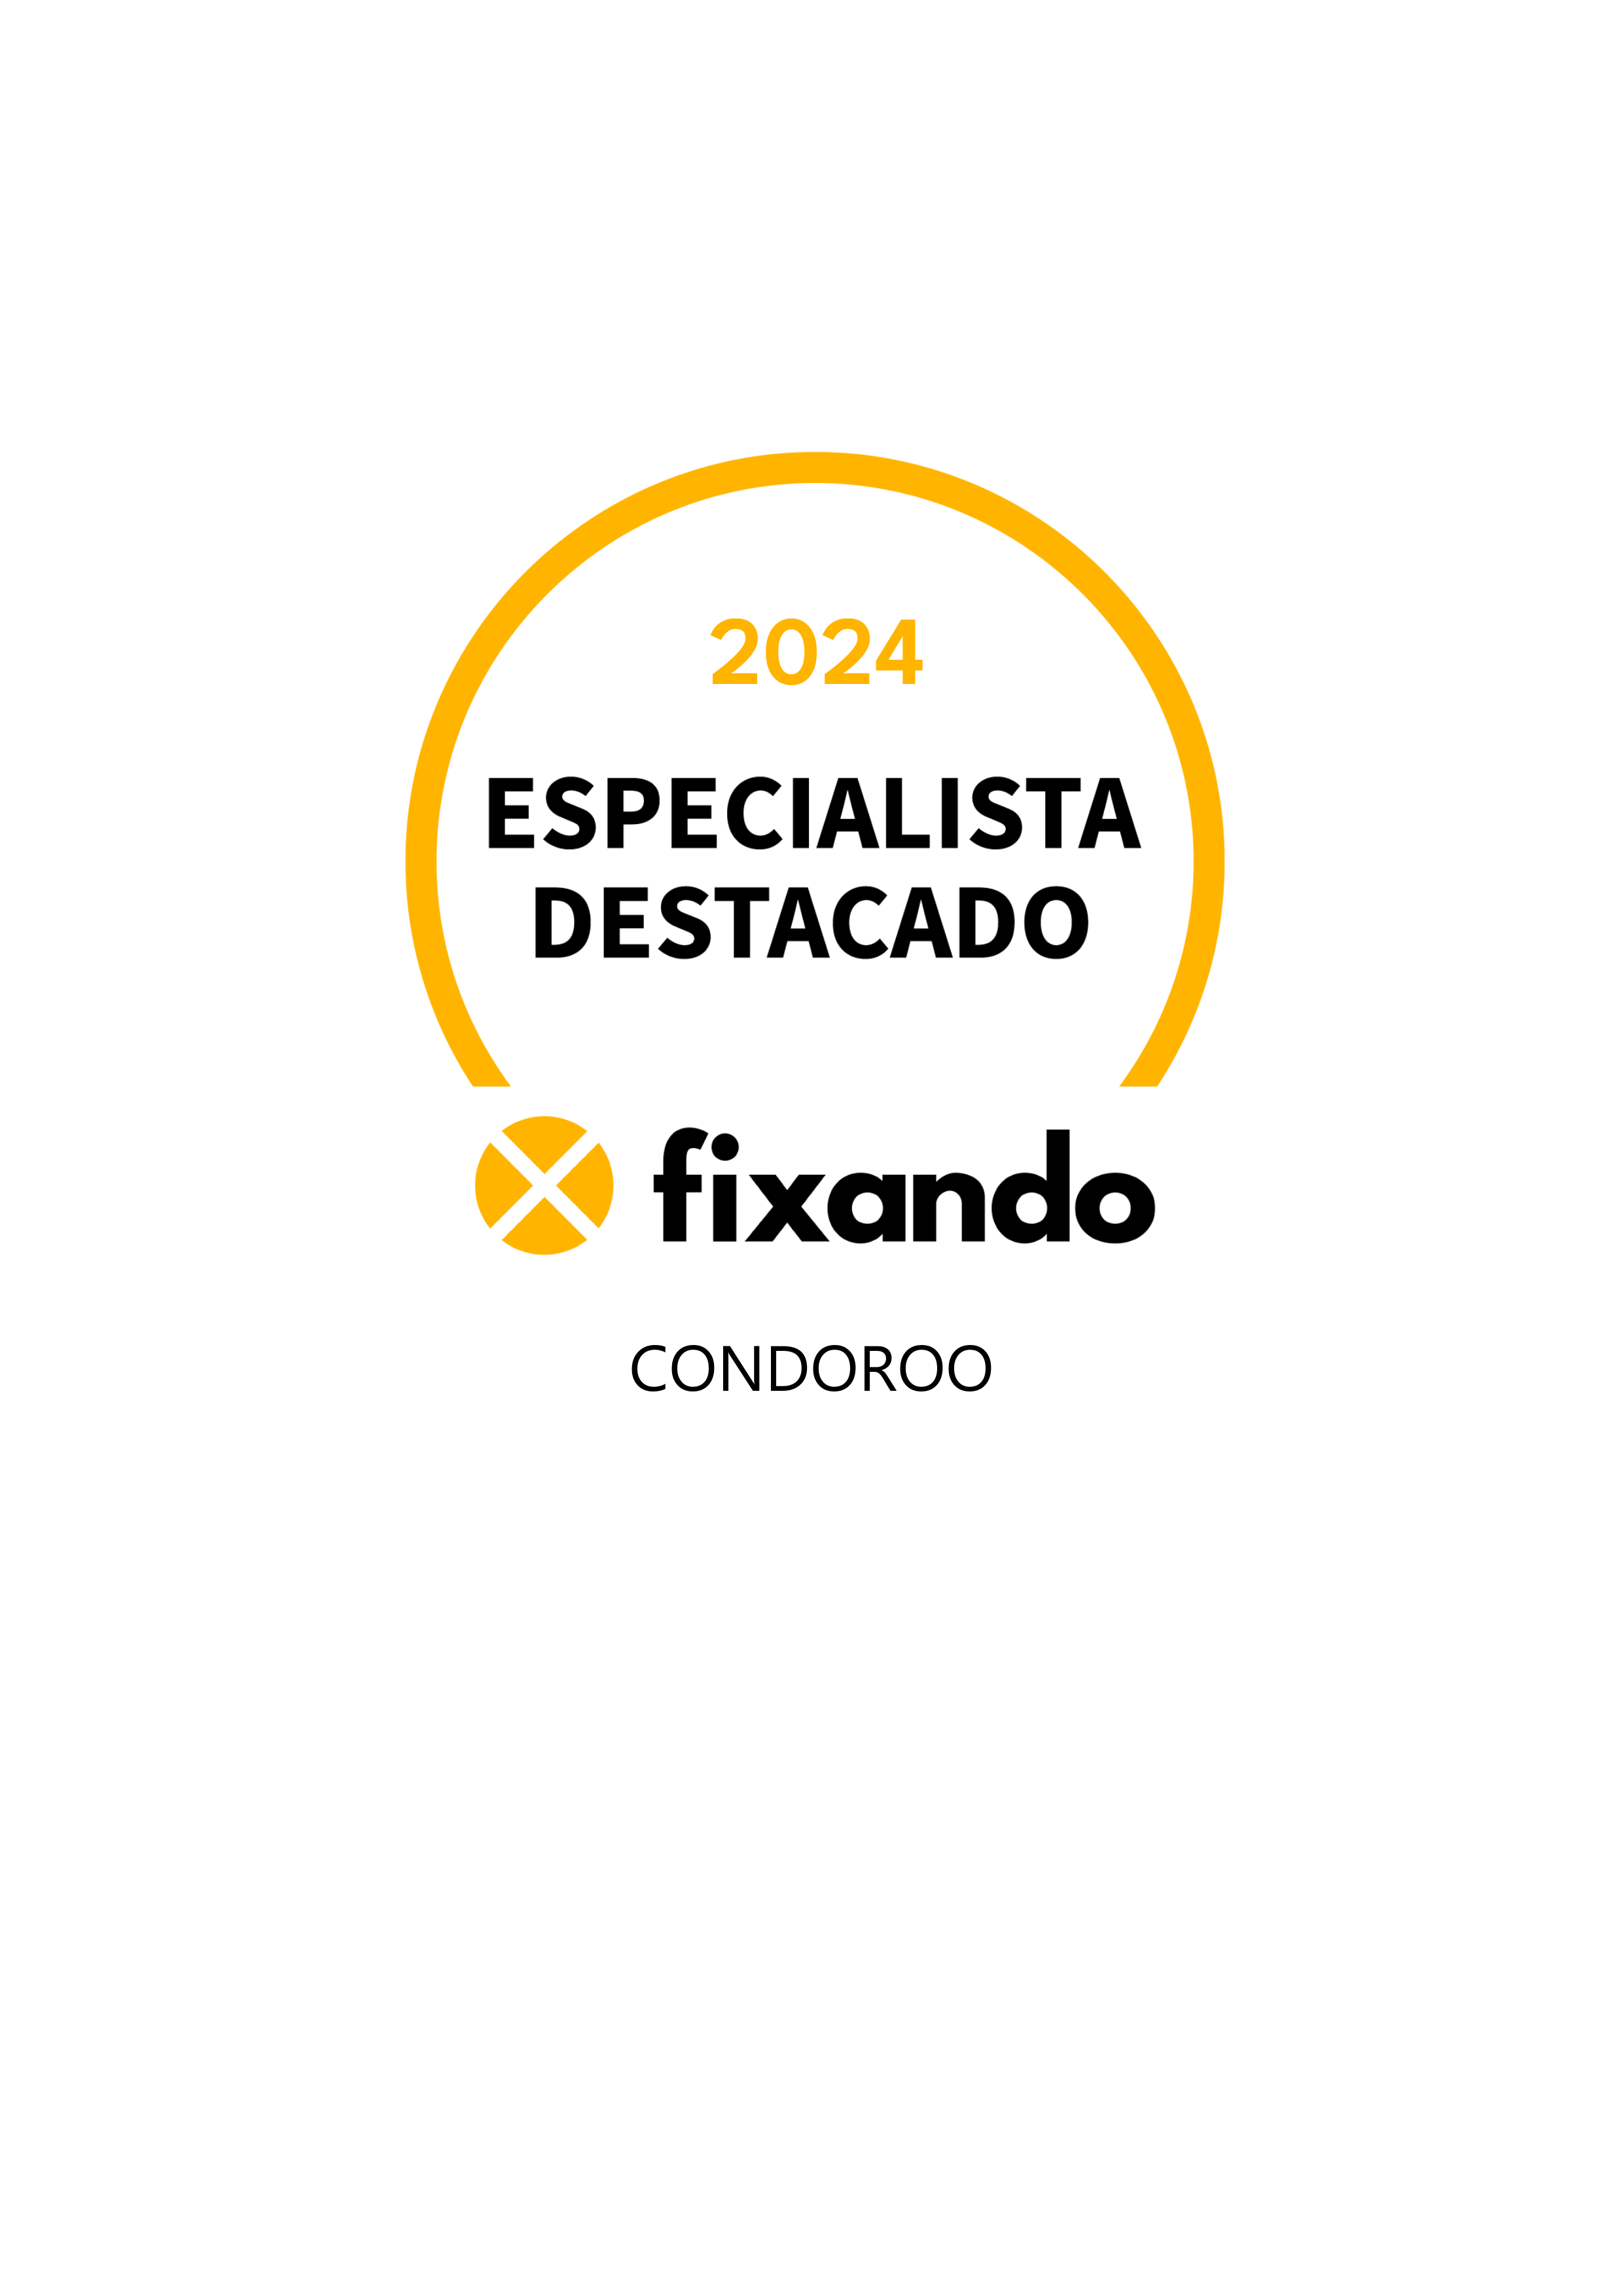 Condoroo - Lisboa - Gestão de Condomínios Online